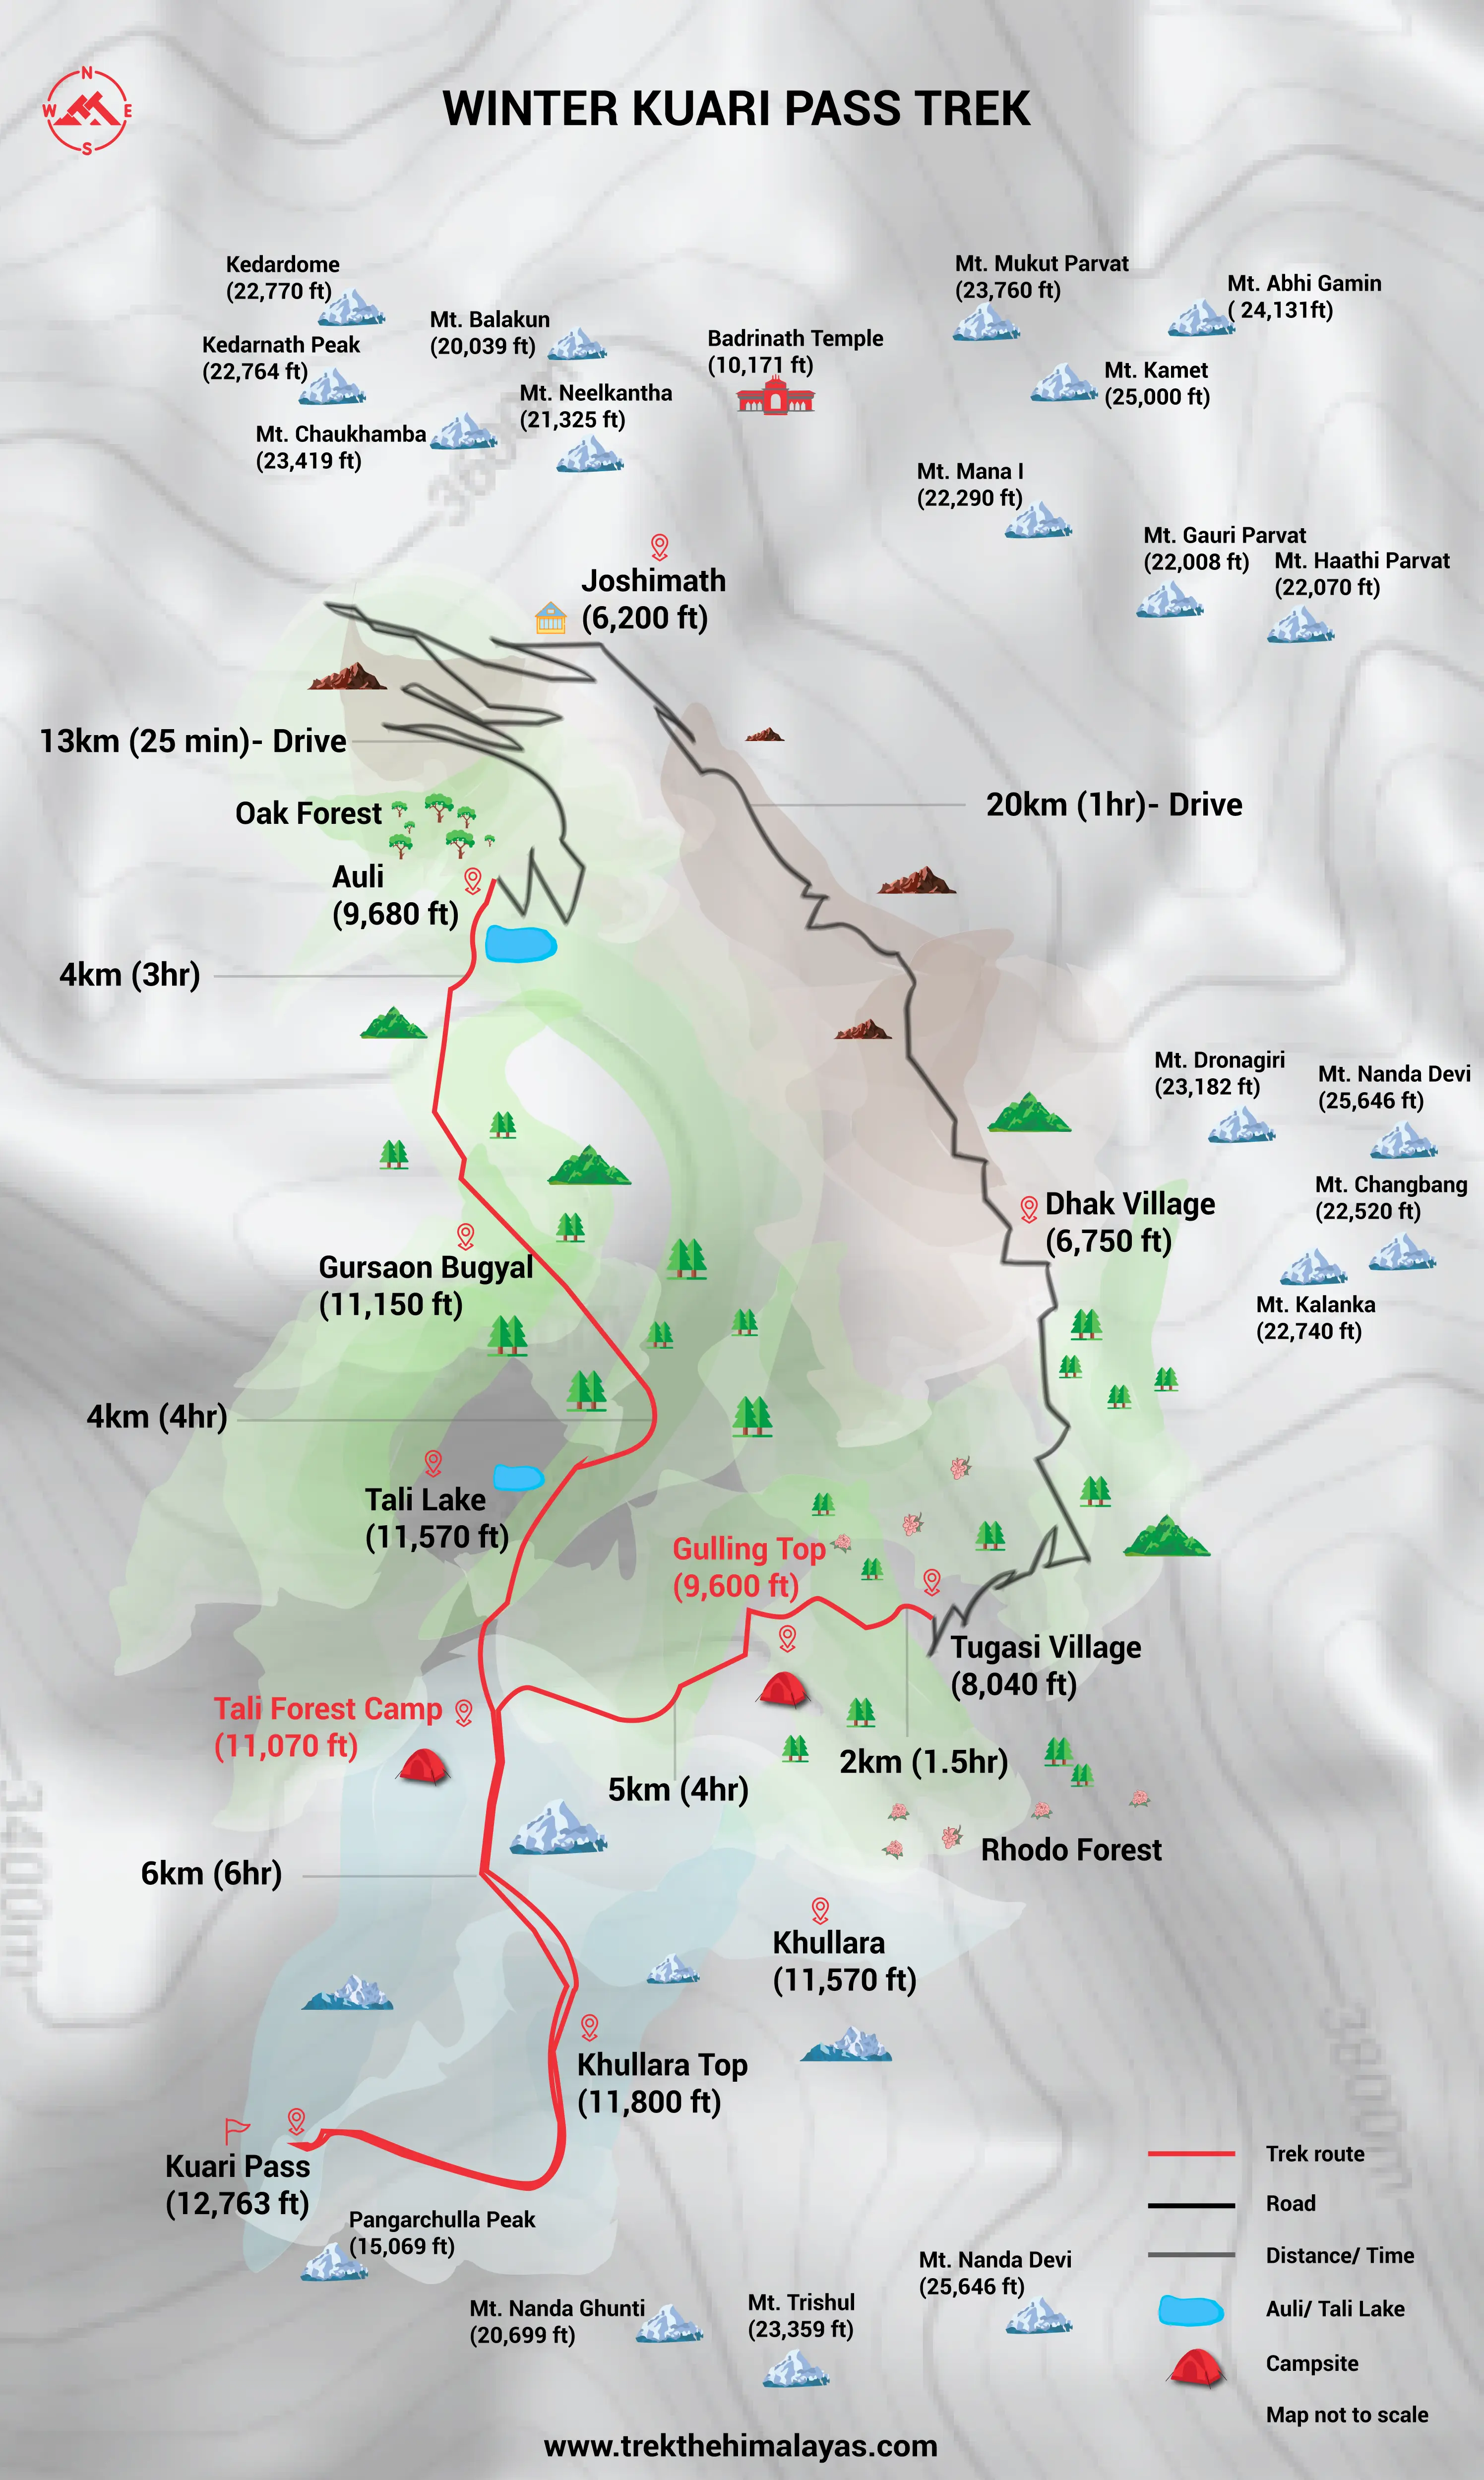 Winter Kuari Pass Trek Maps